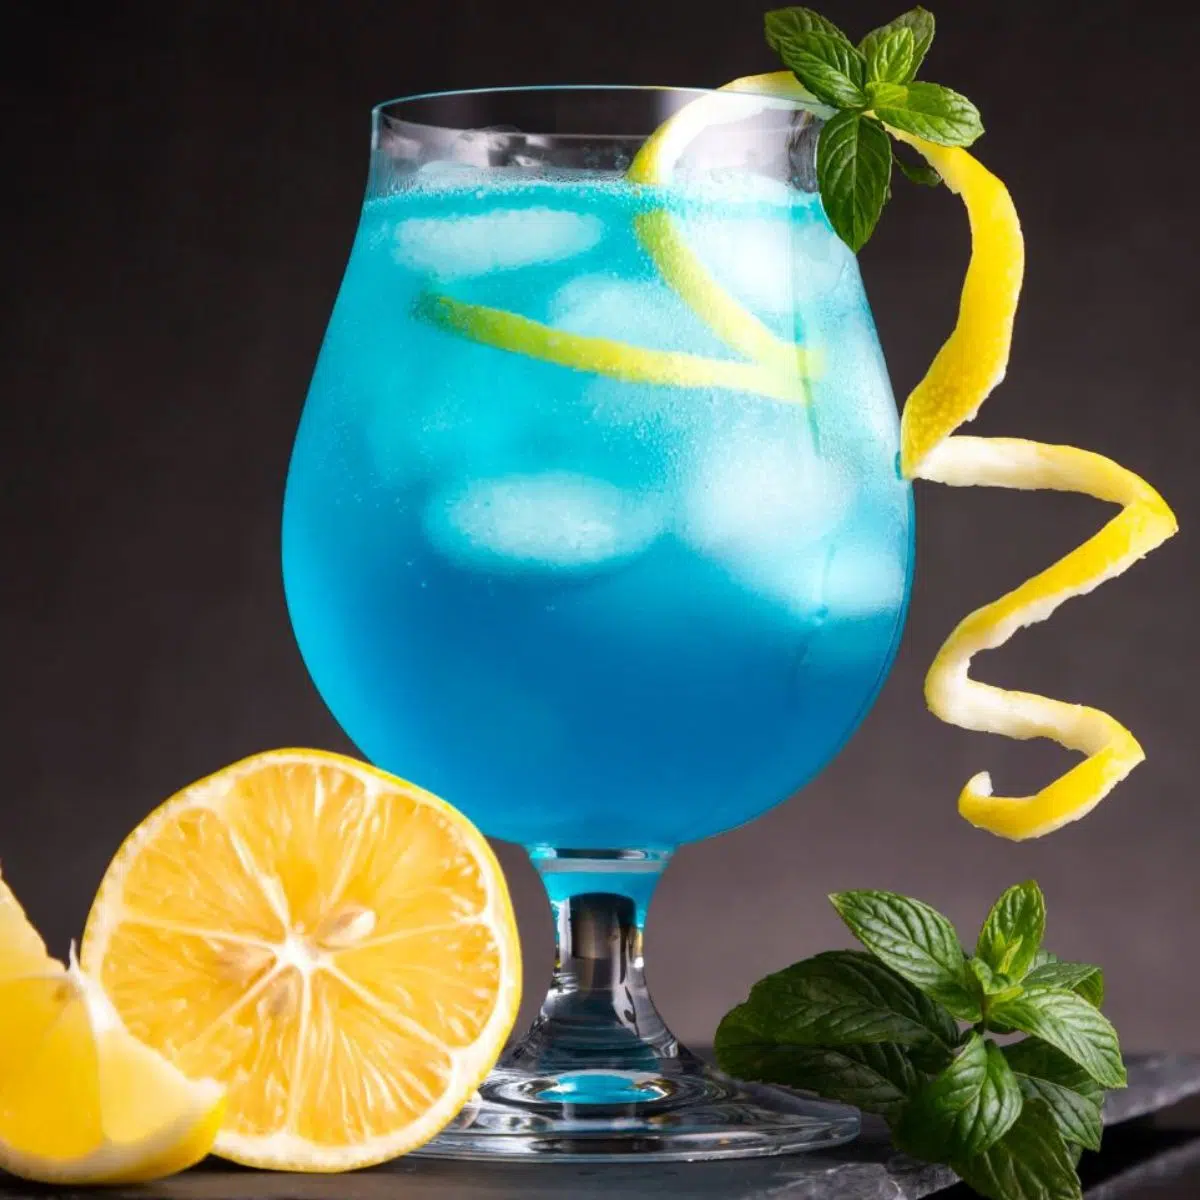 Bedste blå lagune cocktail drink opskrift serveres med citron twist og basilikum garniture.